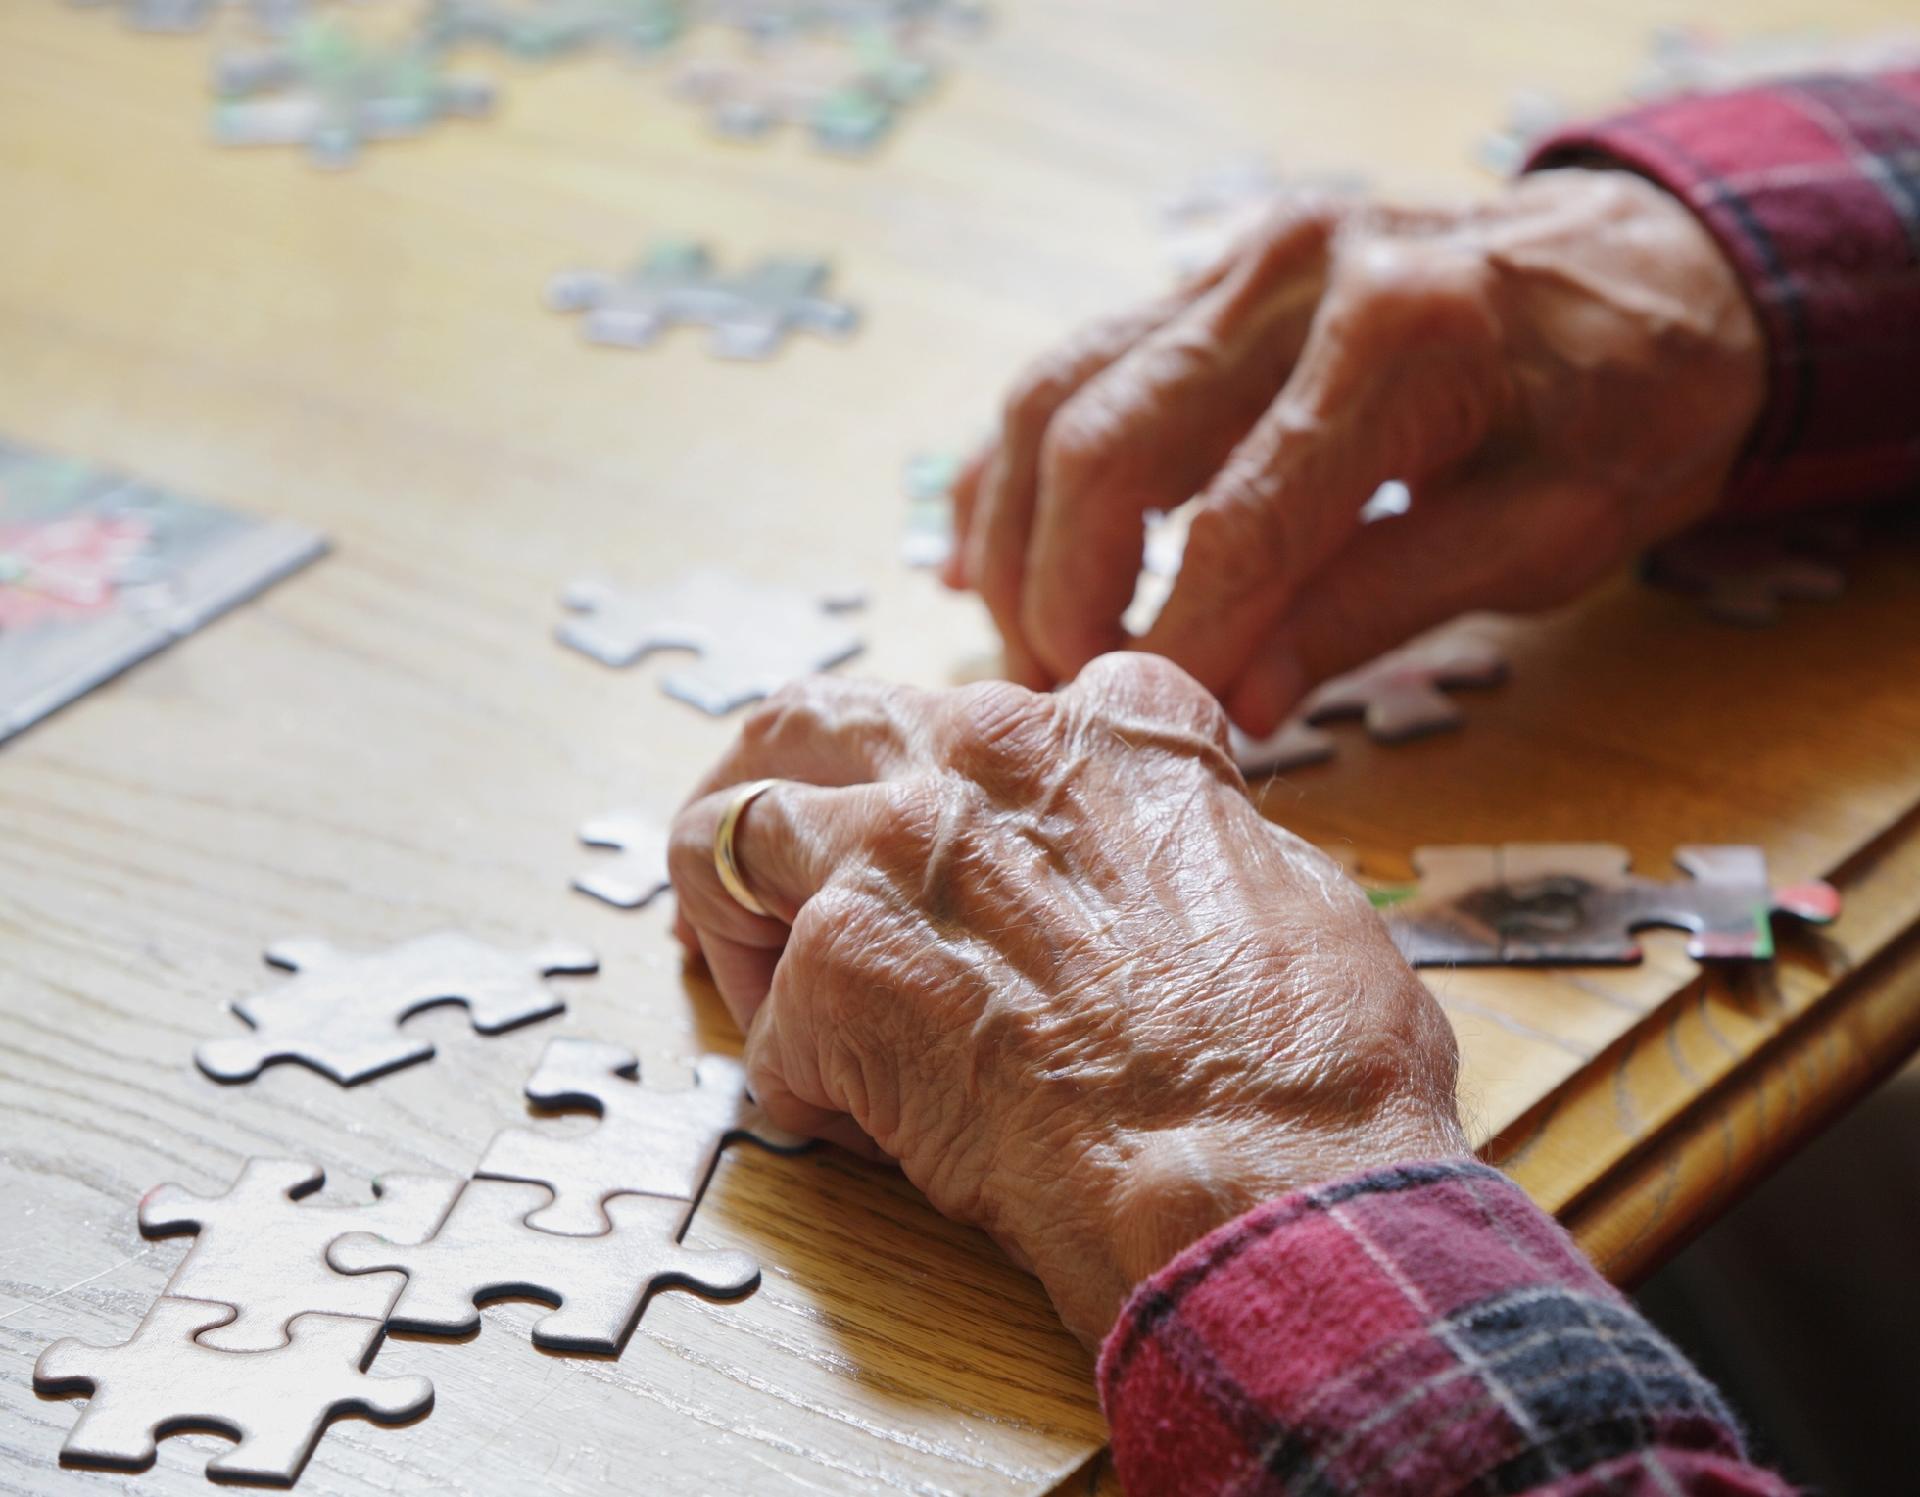 Jogos digitais de quebra-cabeças melhoram memória de idosos, diz